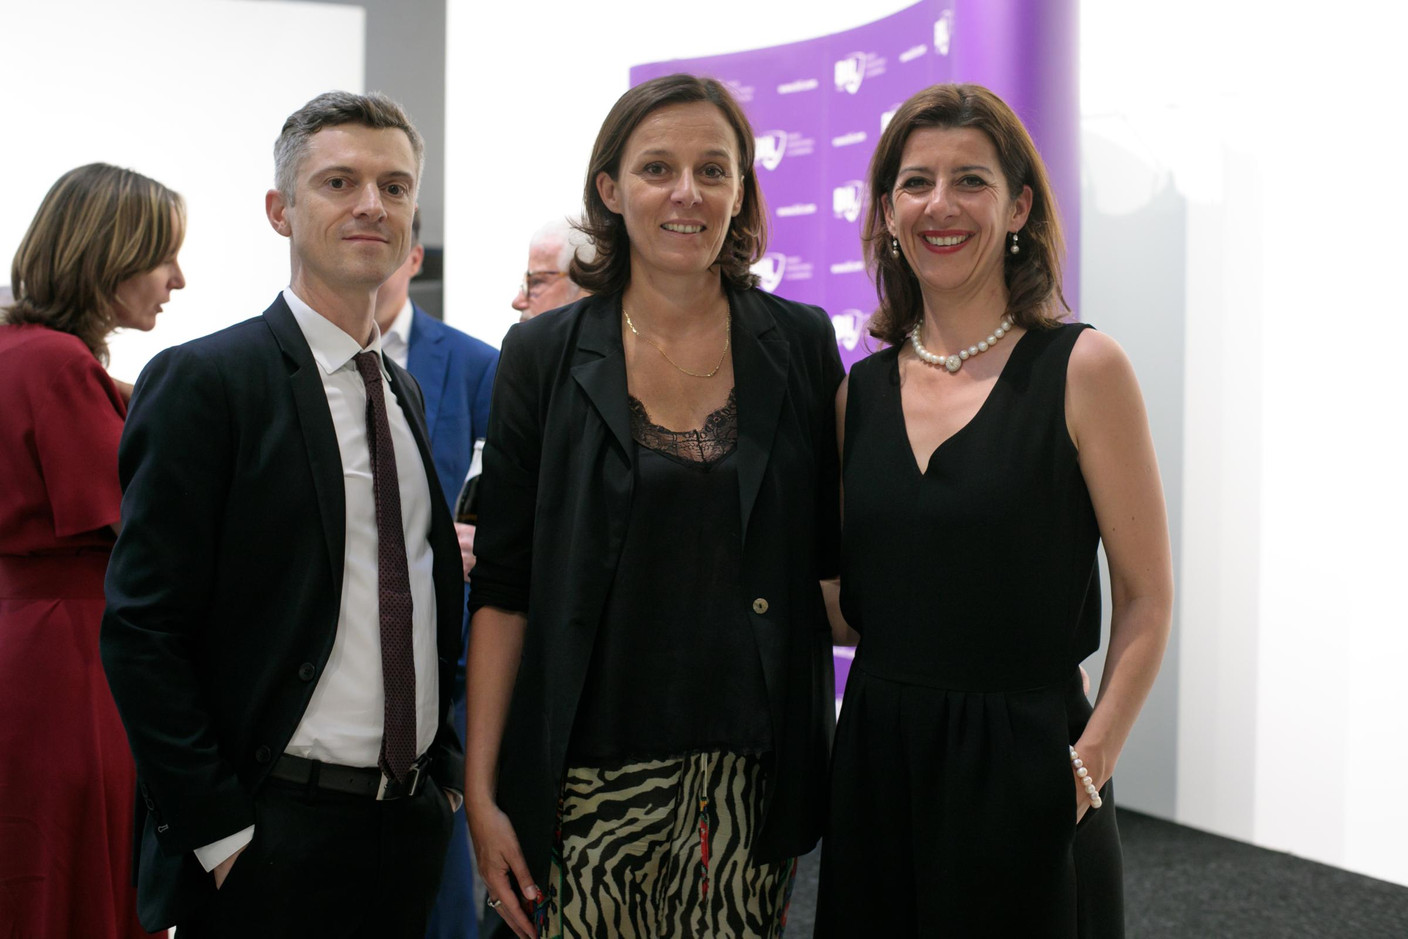 Vincent Pelletier (Bil), Stéphanie Jauquet (Cocottes) et Nadia Manzari (Schiltz & Schiltz). (Photo: Matic Zorman)